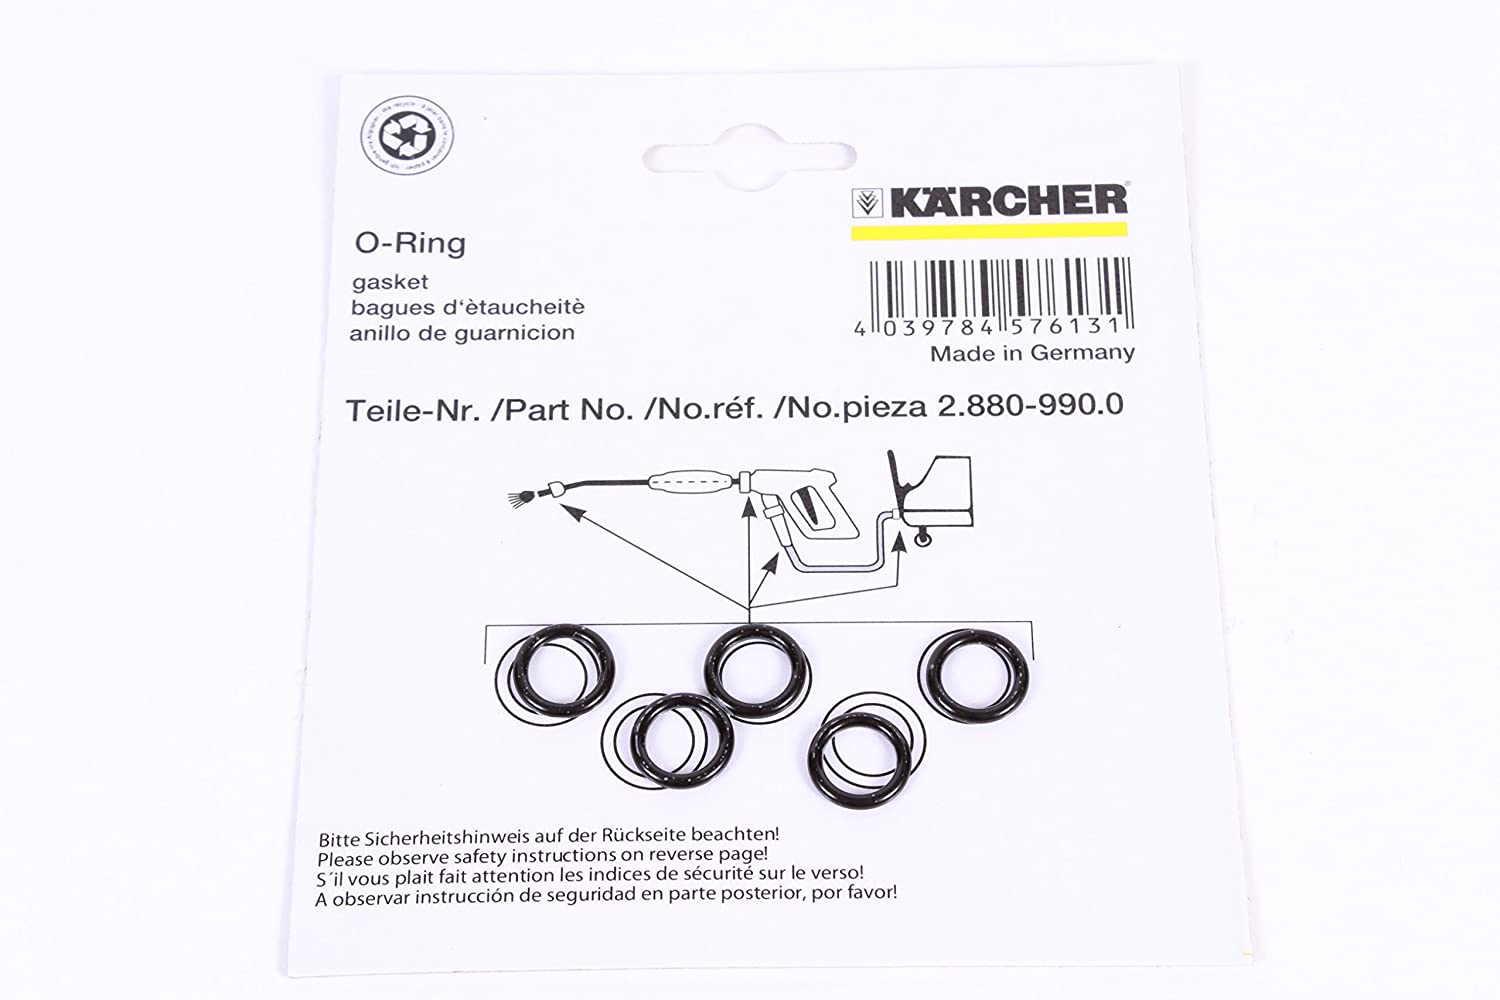 Karcher, Karcher Part Number 2.880-990.0 Genuine OEM Spare Part Pack of 5 O-Ring